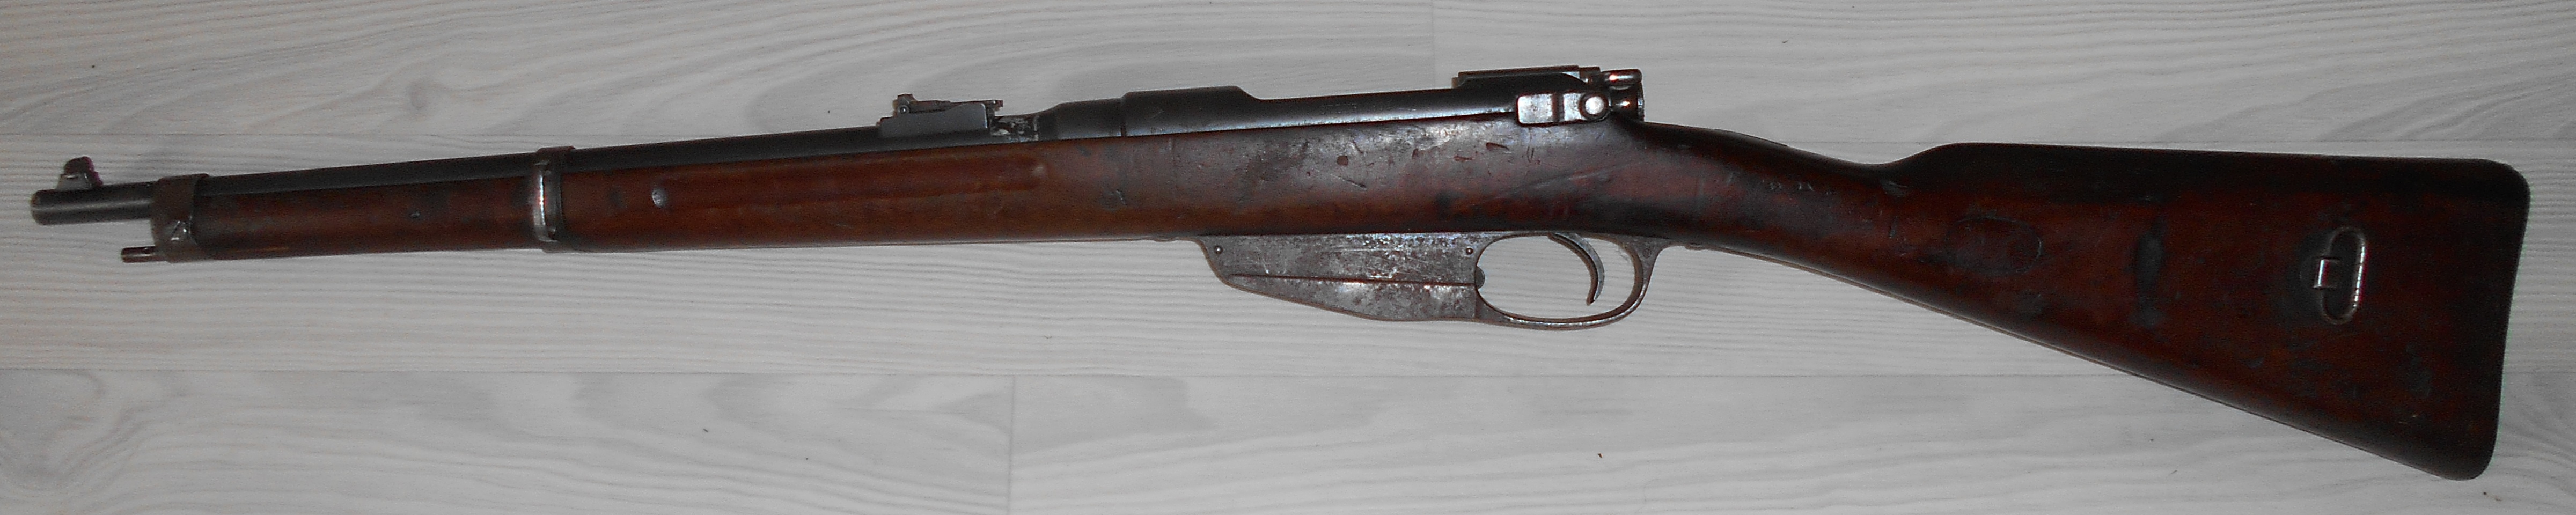 Steyr Mannlicher 1896 (carabine)